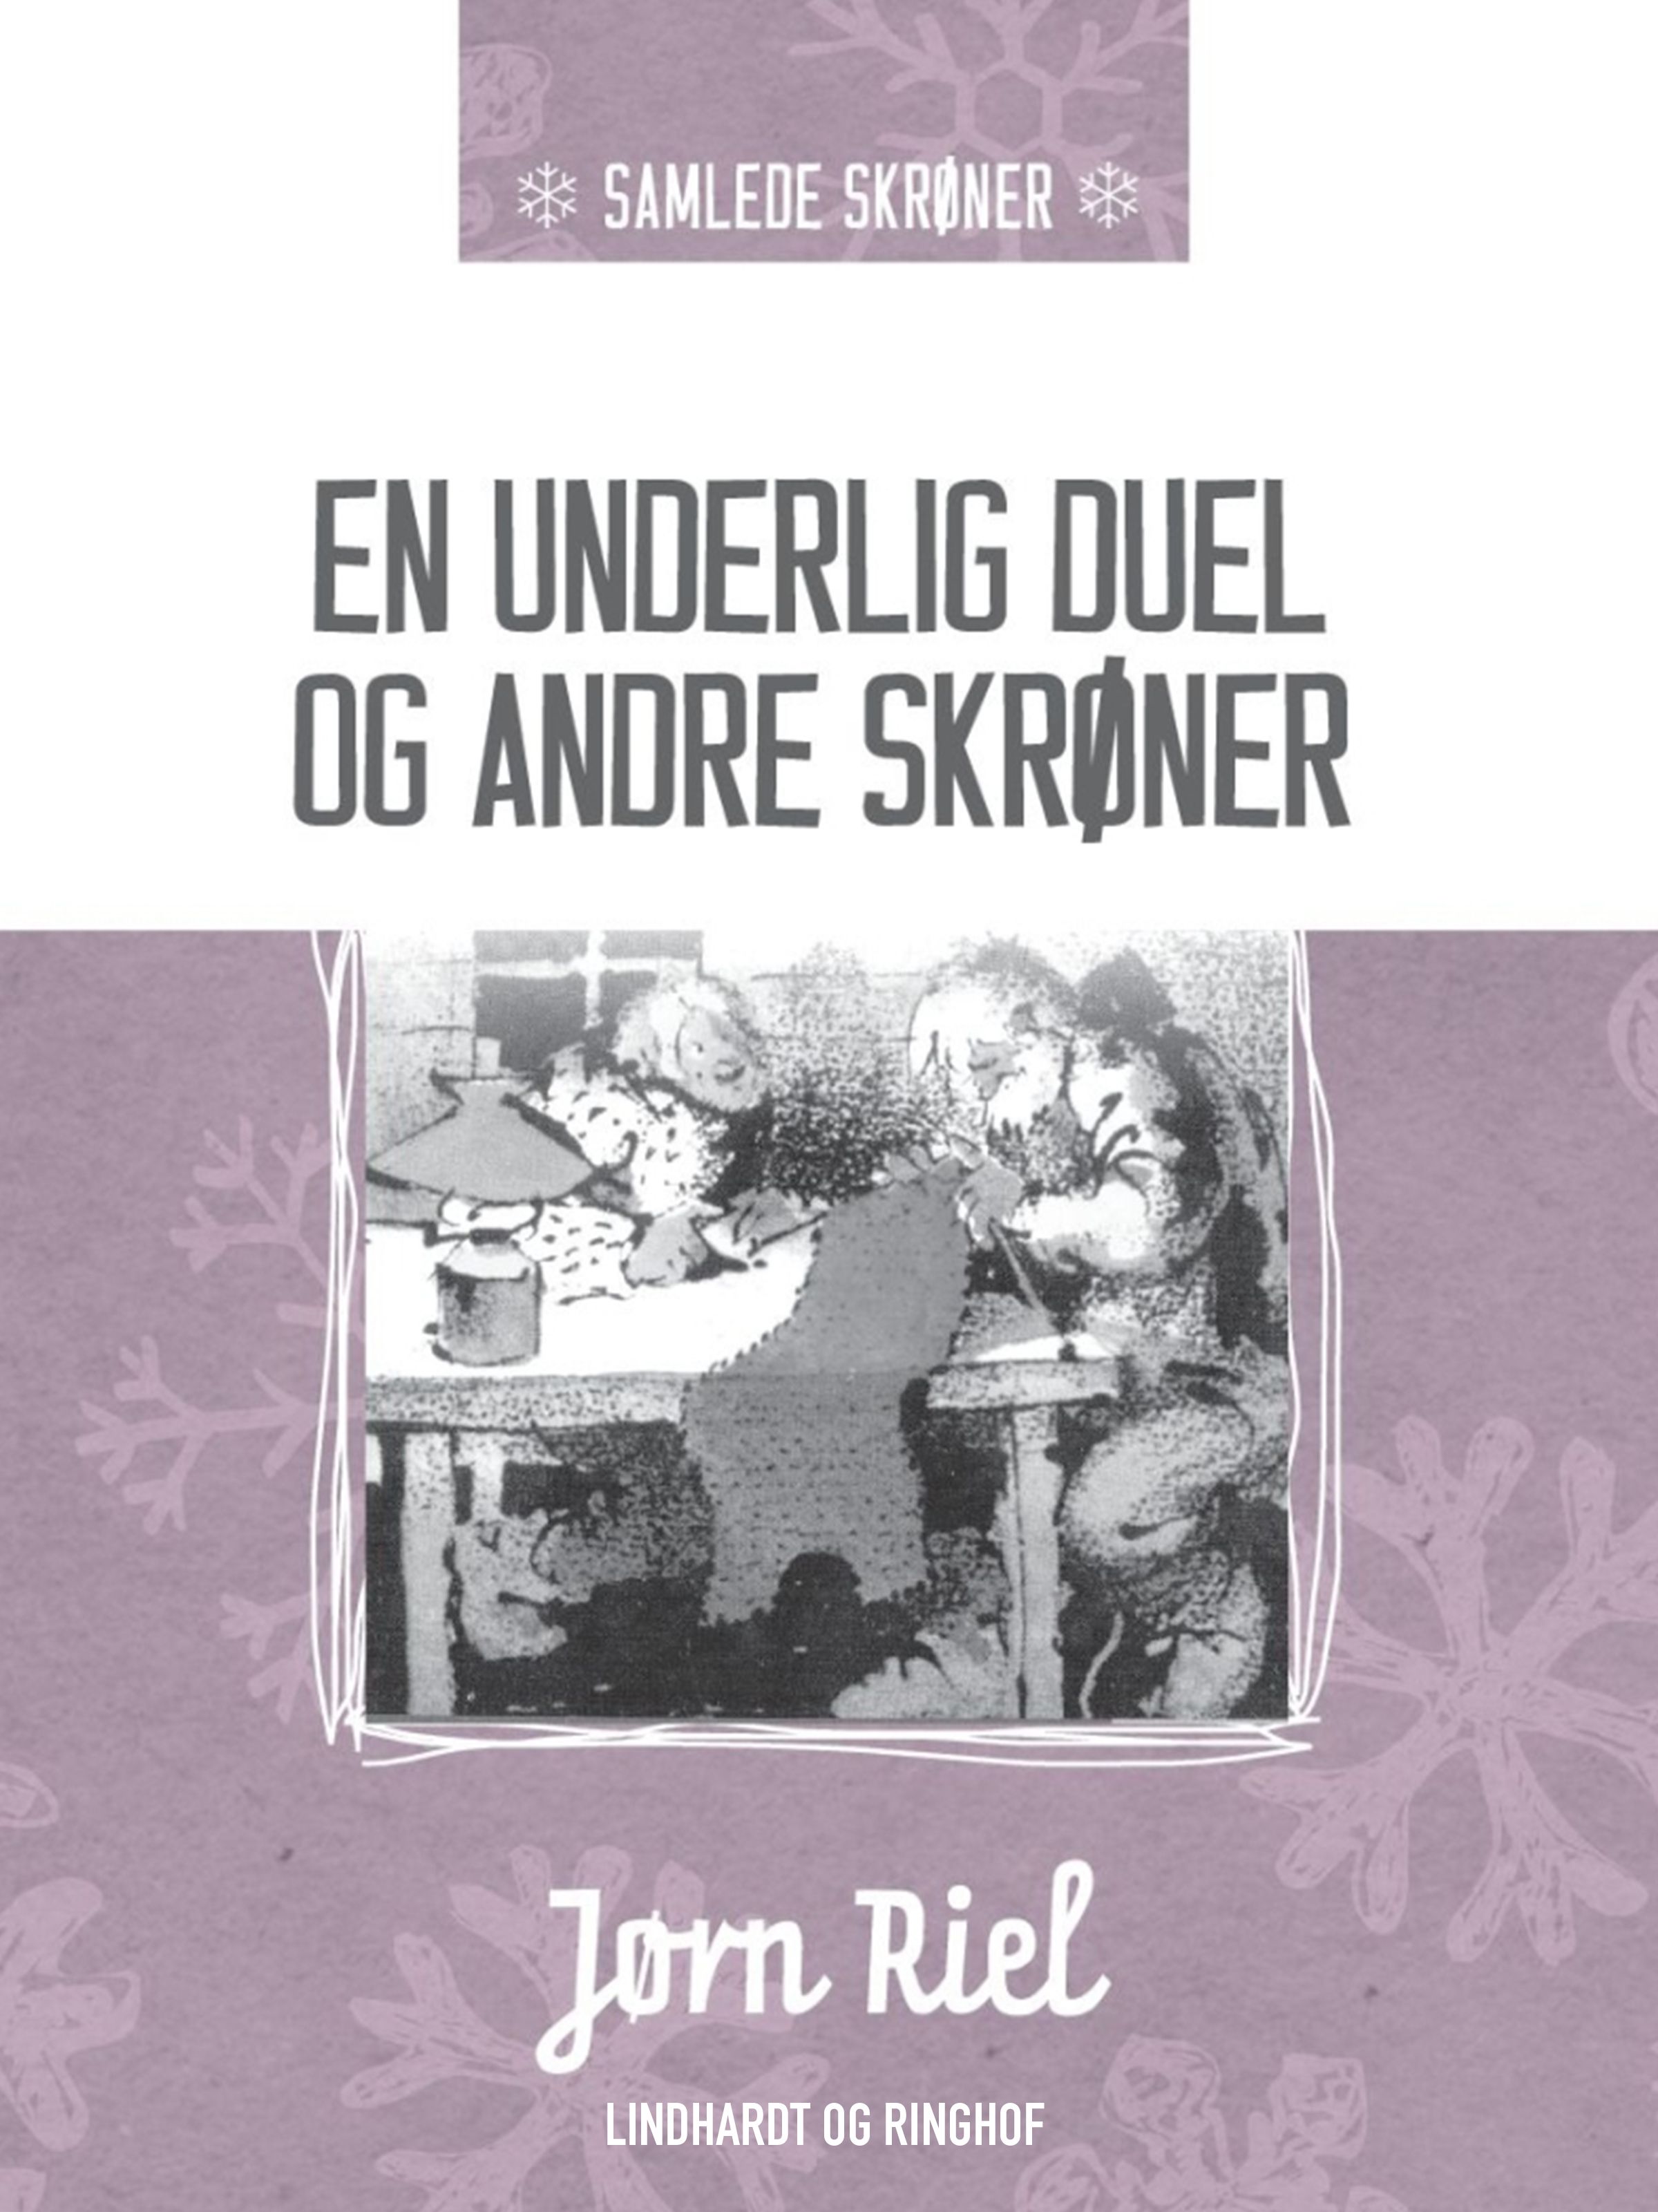 En underlig duel og andre skrøner, eBook by Jørn Riel